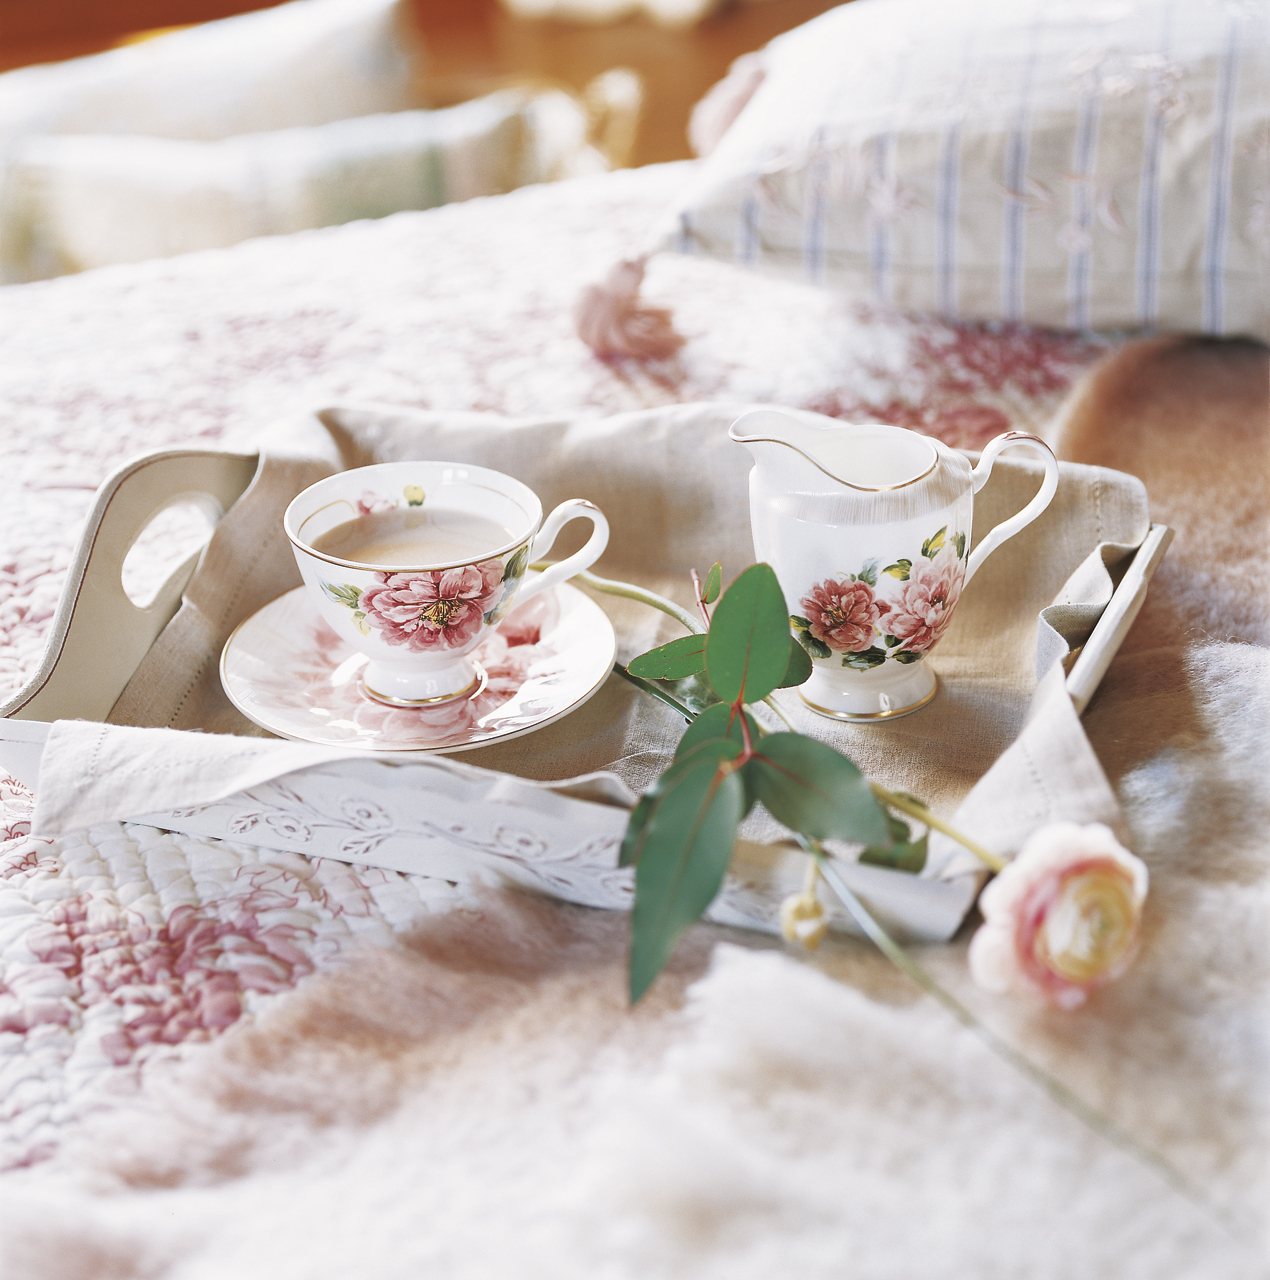 Juego de té floral en una bandeja sobre la cama